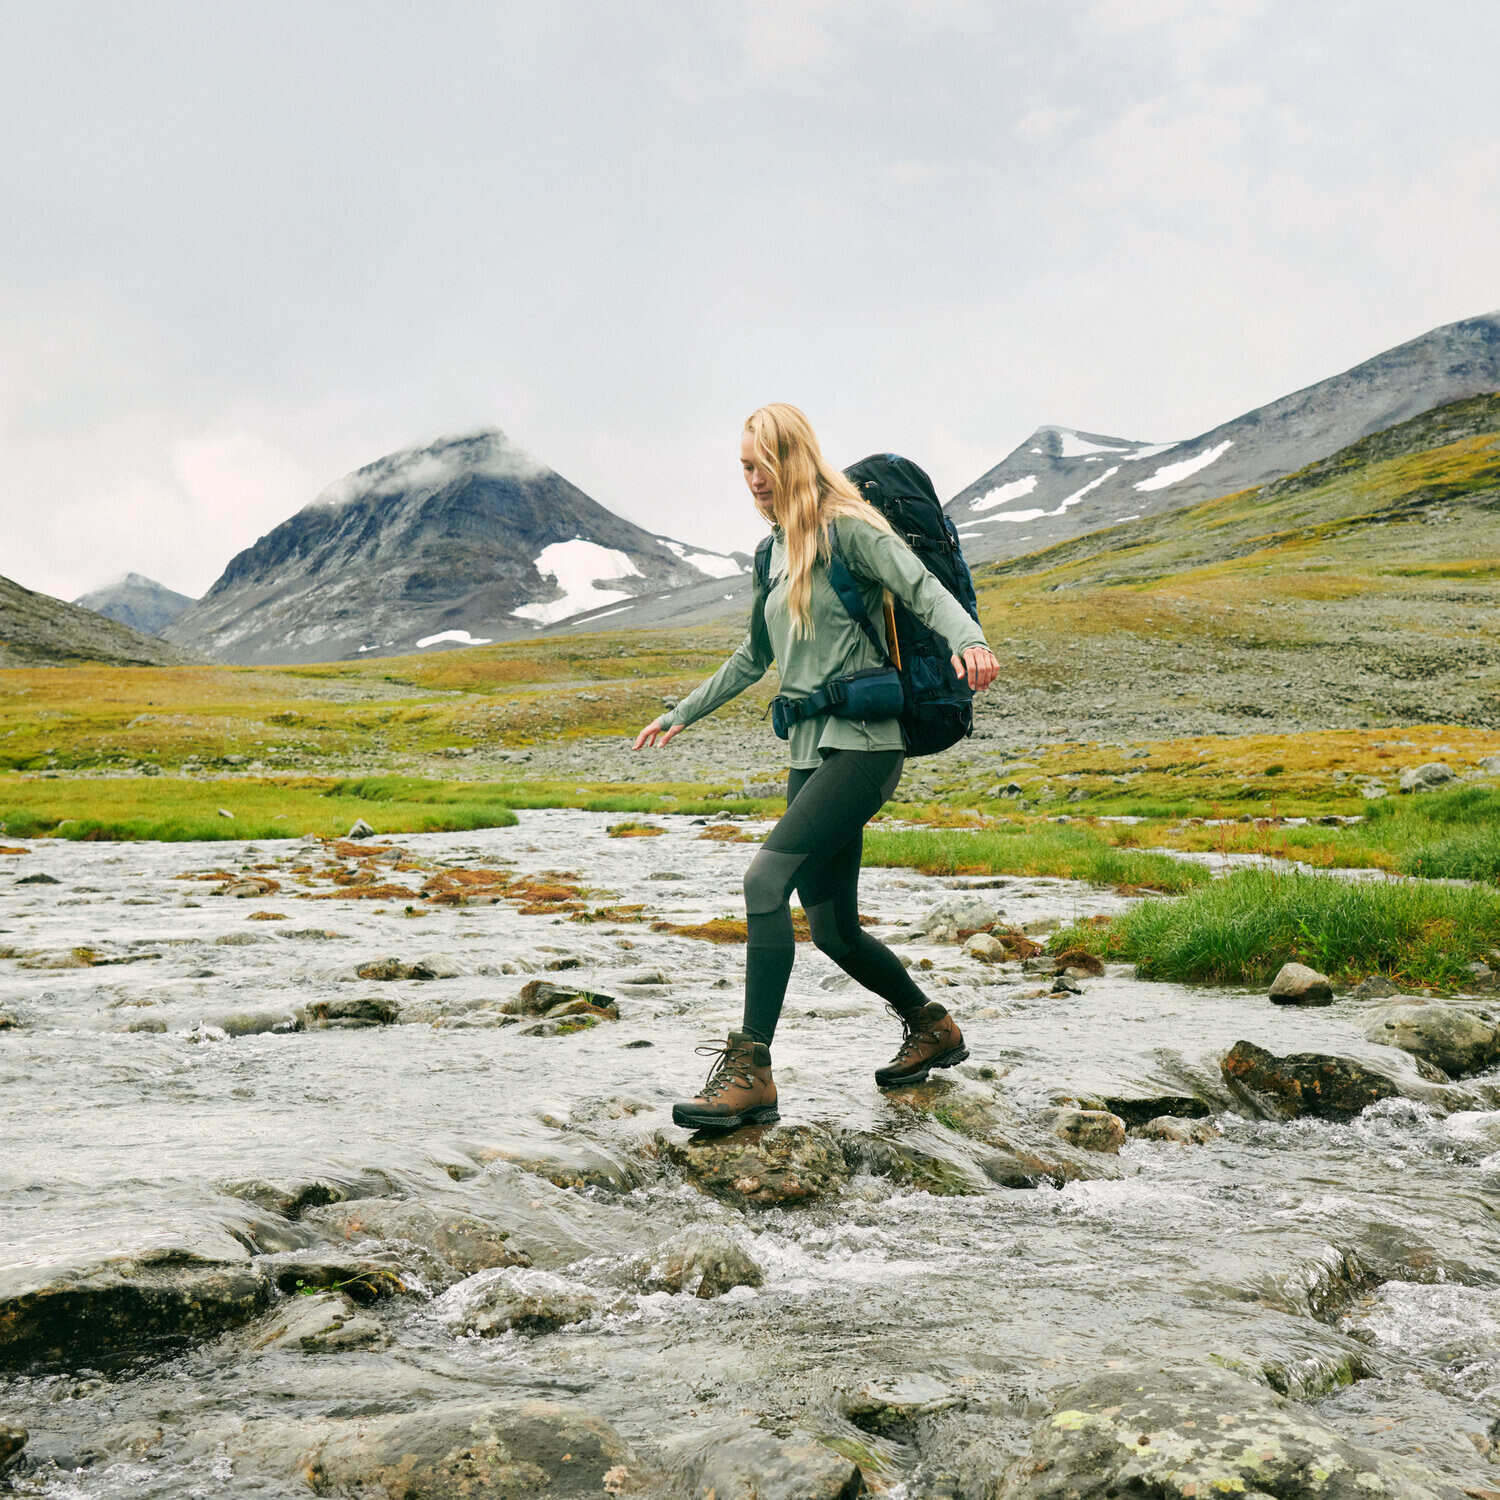 Fjällräven Abisko Trekking Tights Pro: The Best Women's Trekking